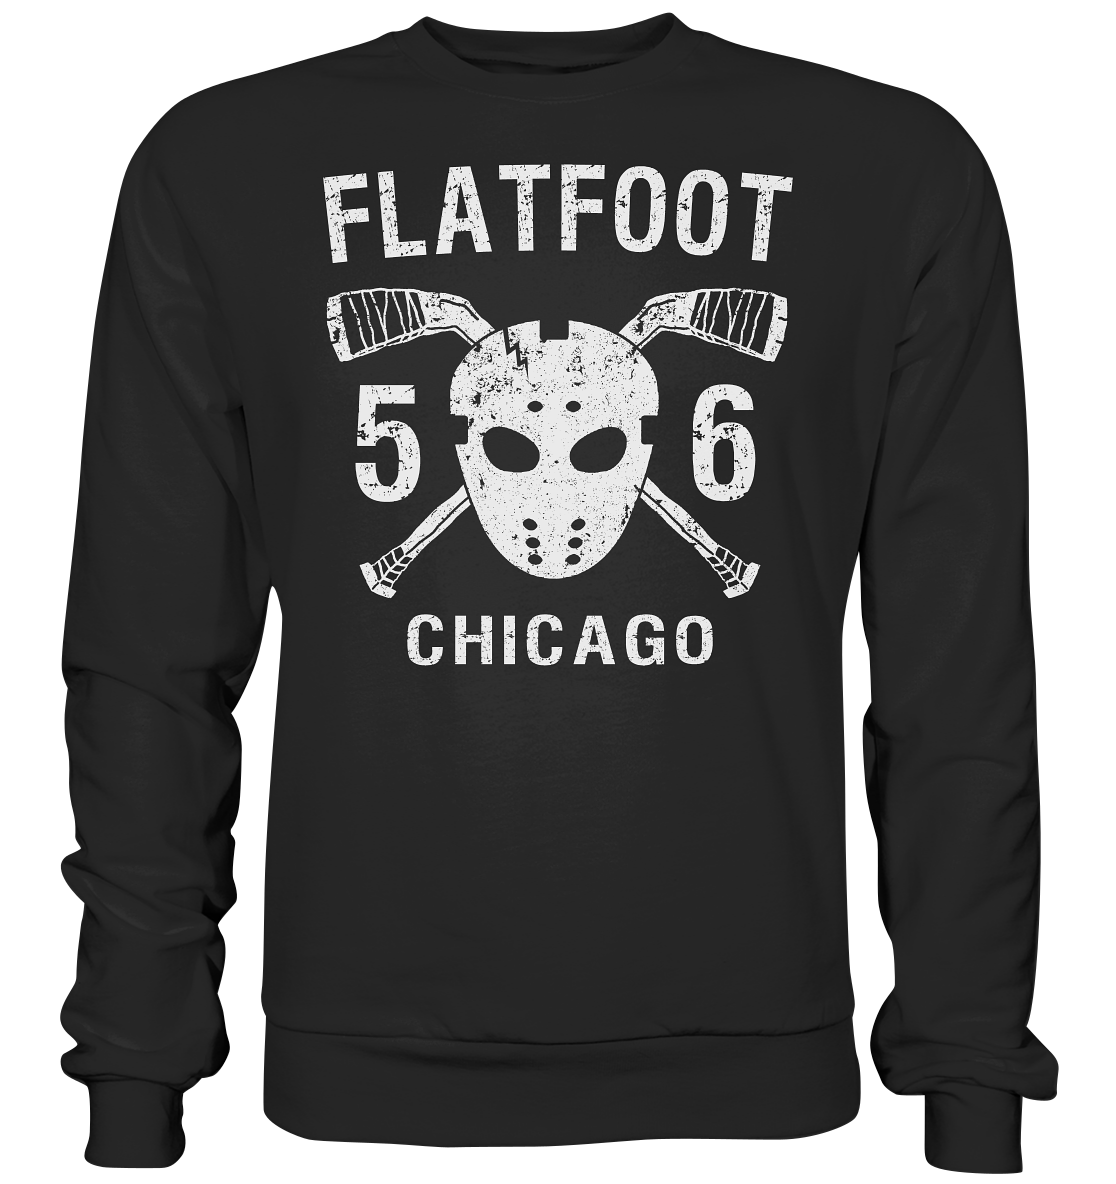 Flatfoot 56 "Hockey" - Premium Sweatshirt